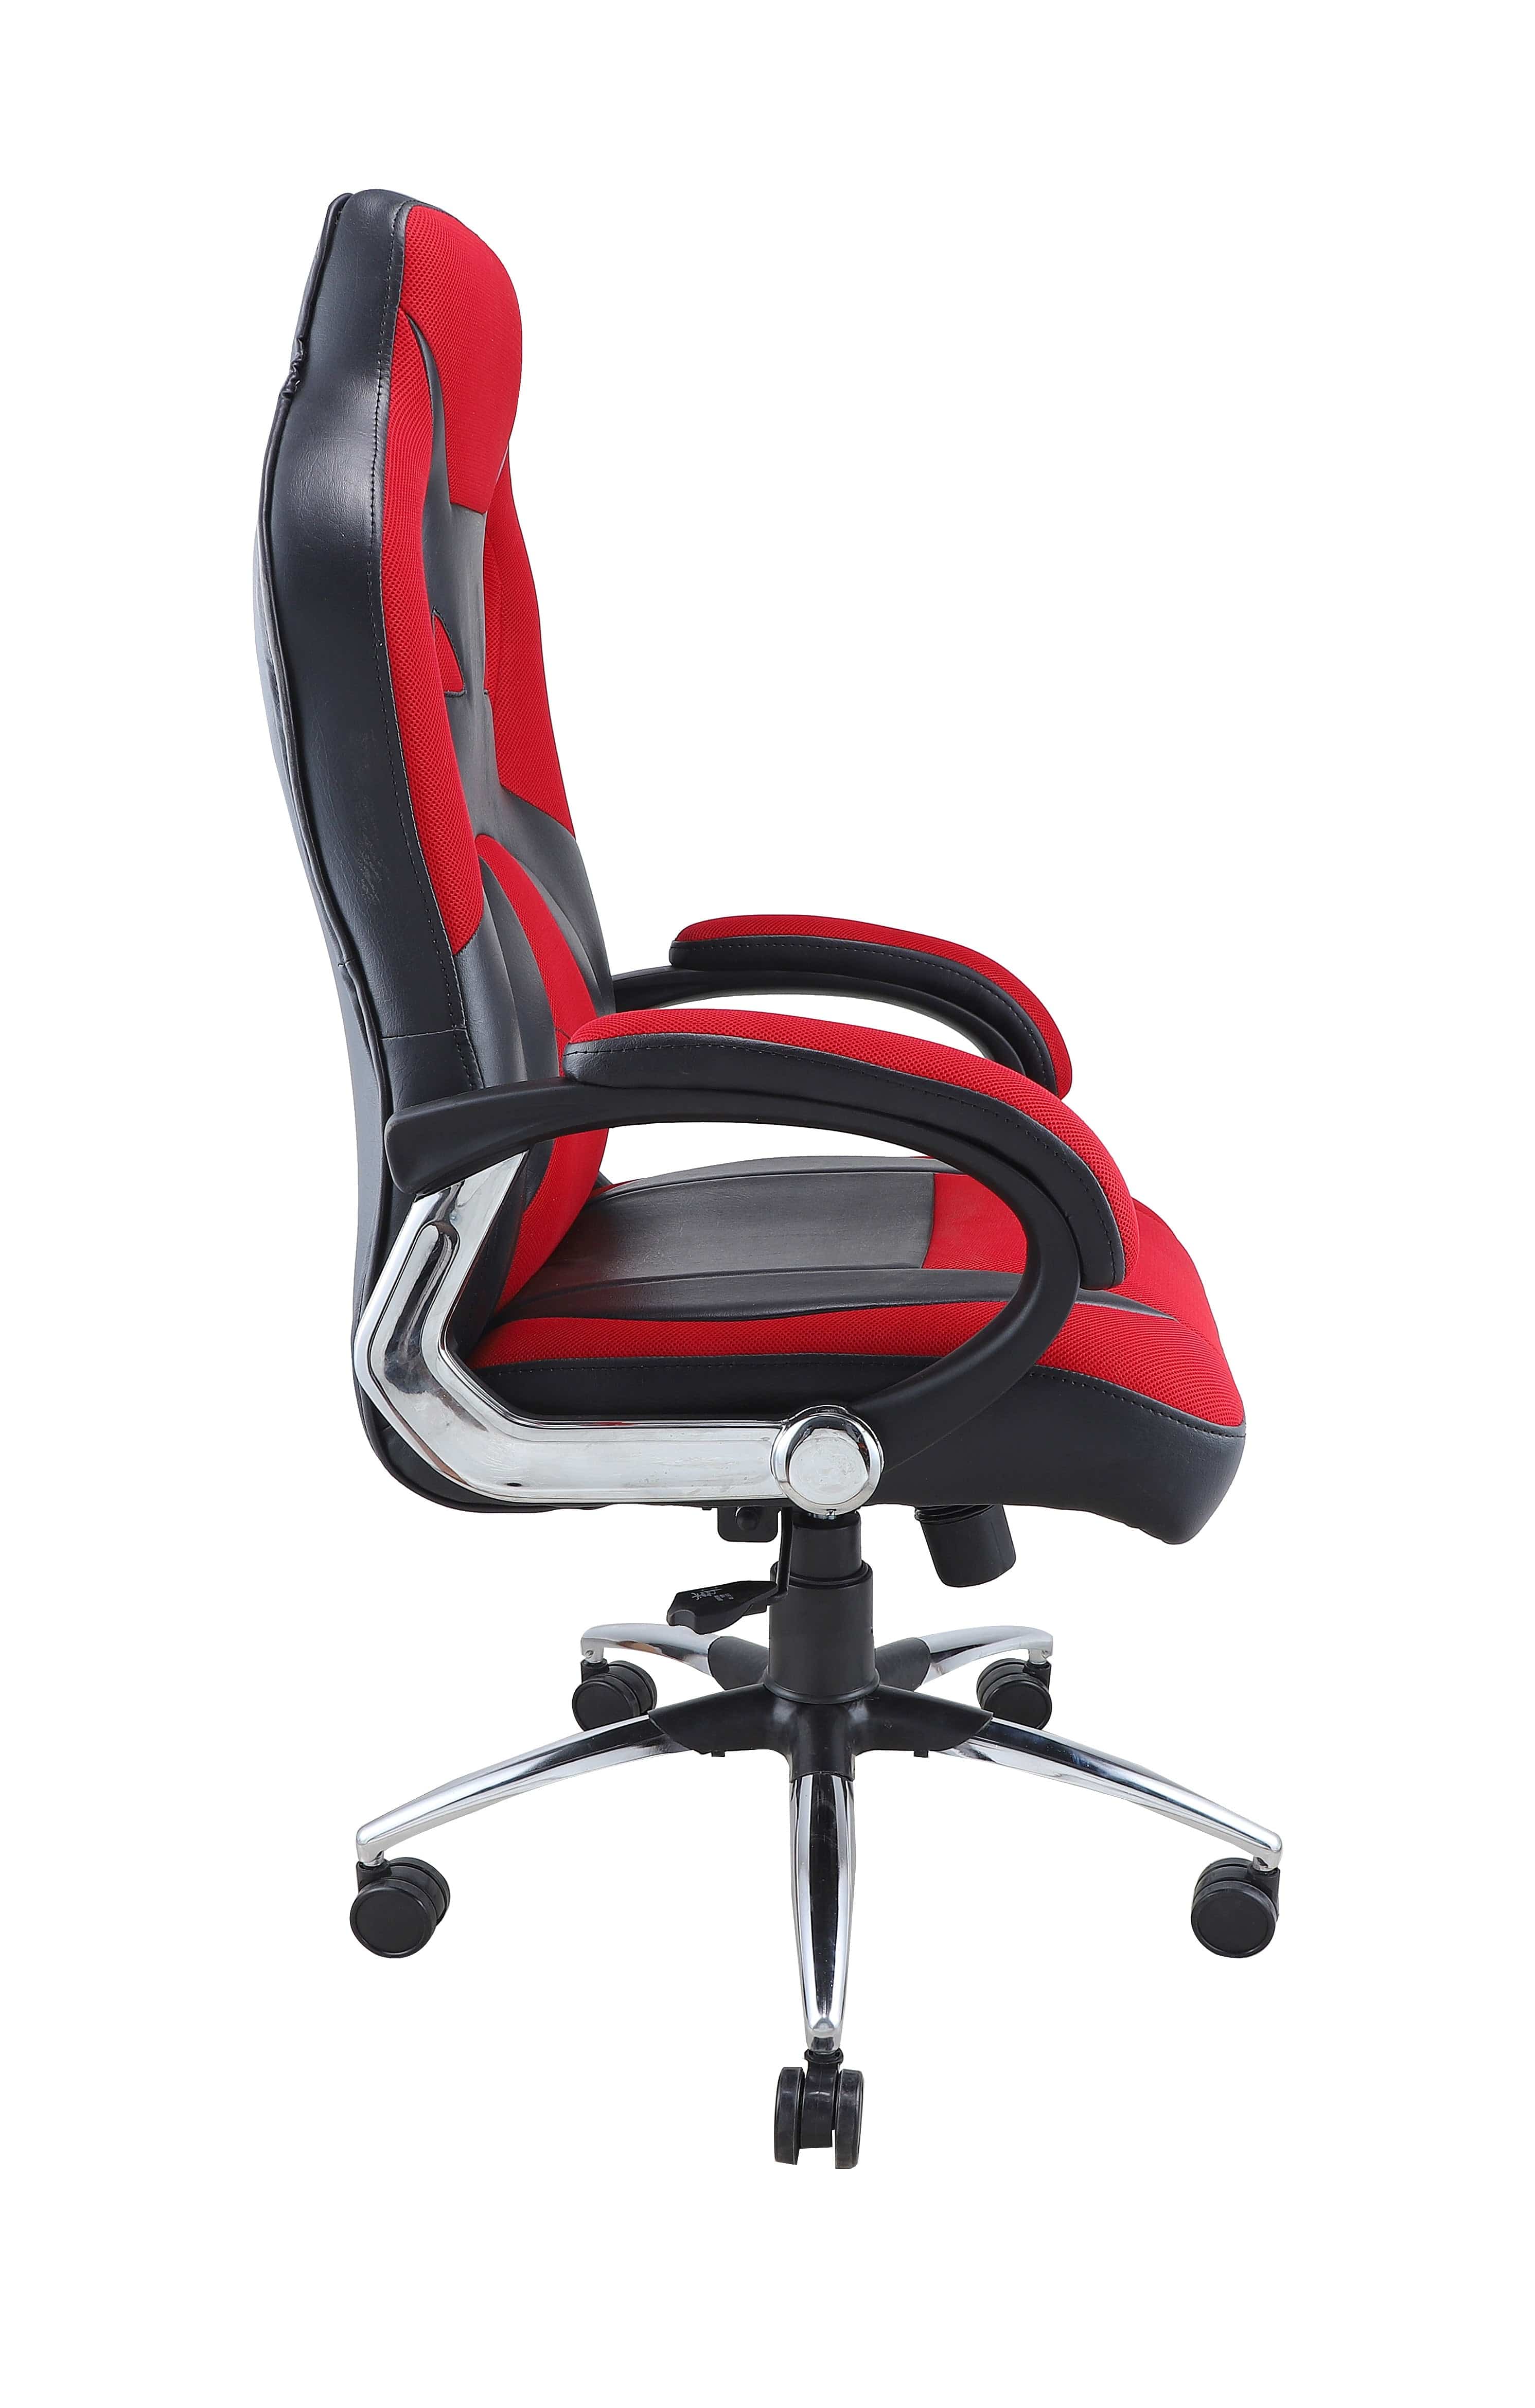 Adiko Designer Gaming Chair in Red